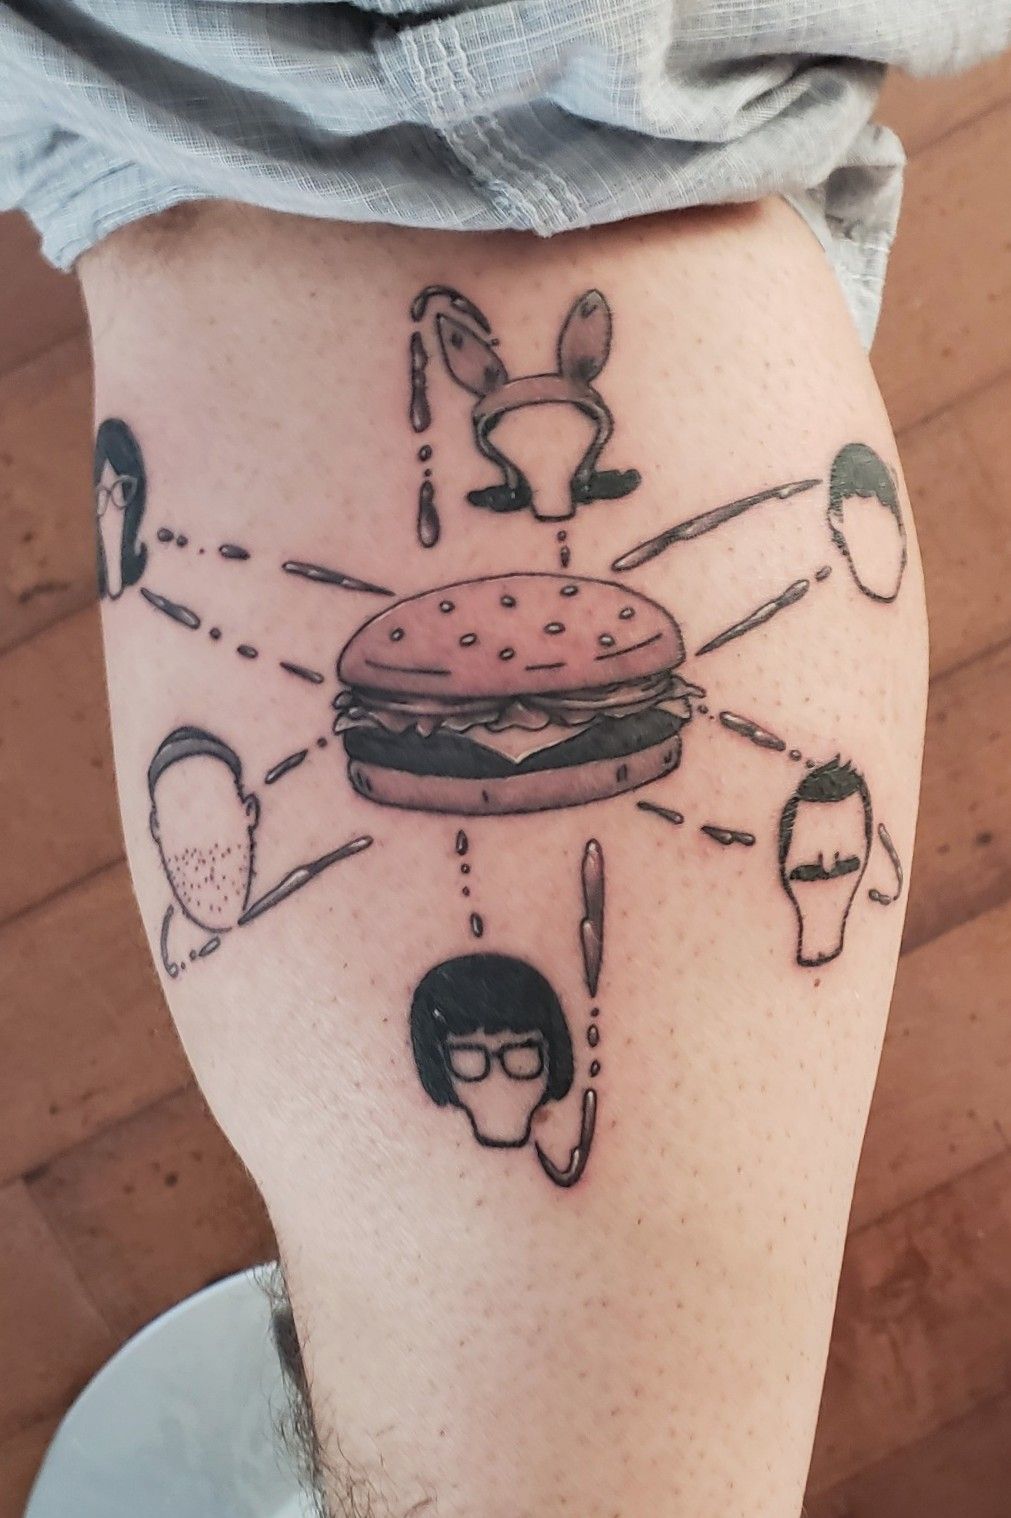 Chris Walker  Bobs Burgers Tattoo Artwork Colour Proof Sheet  Spoke Art